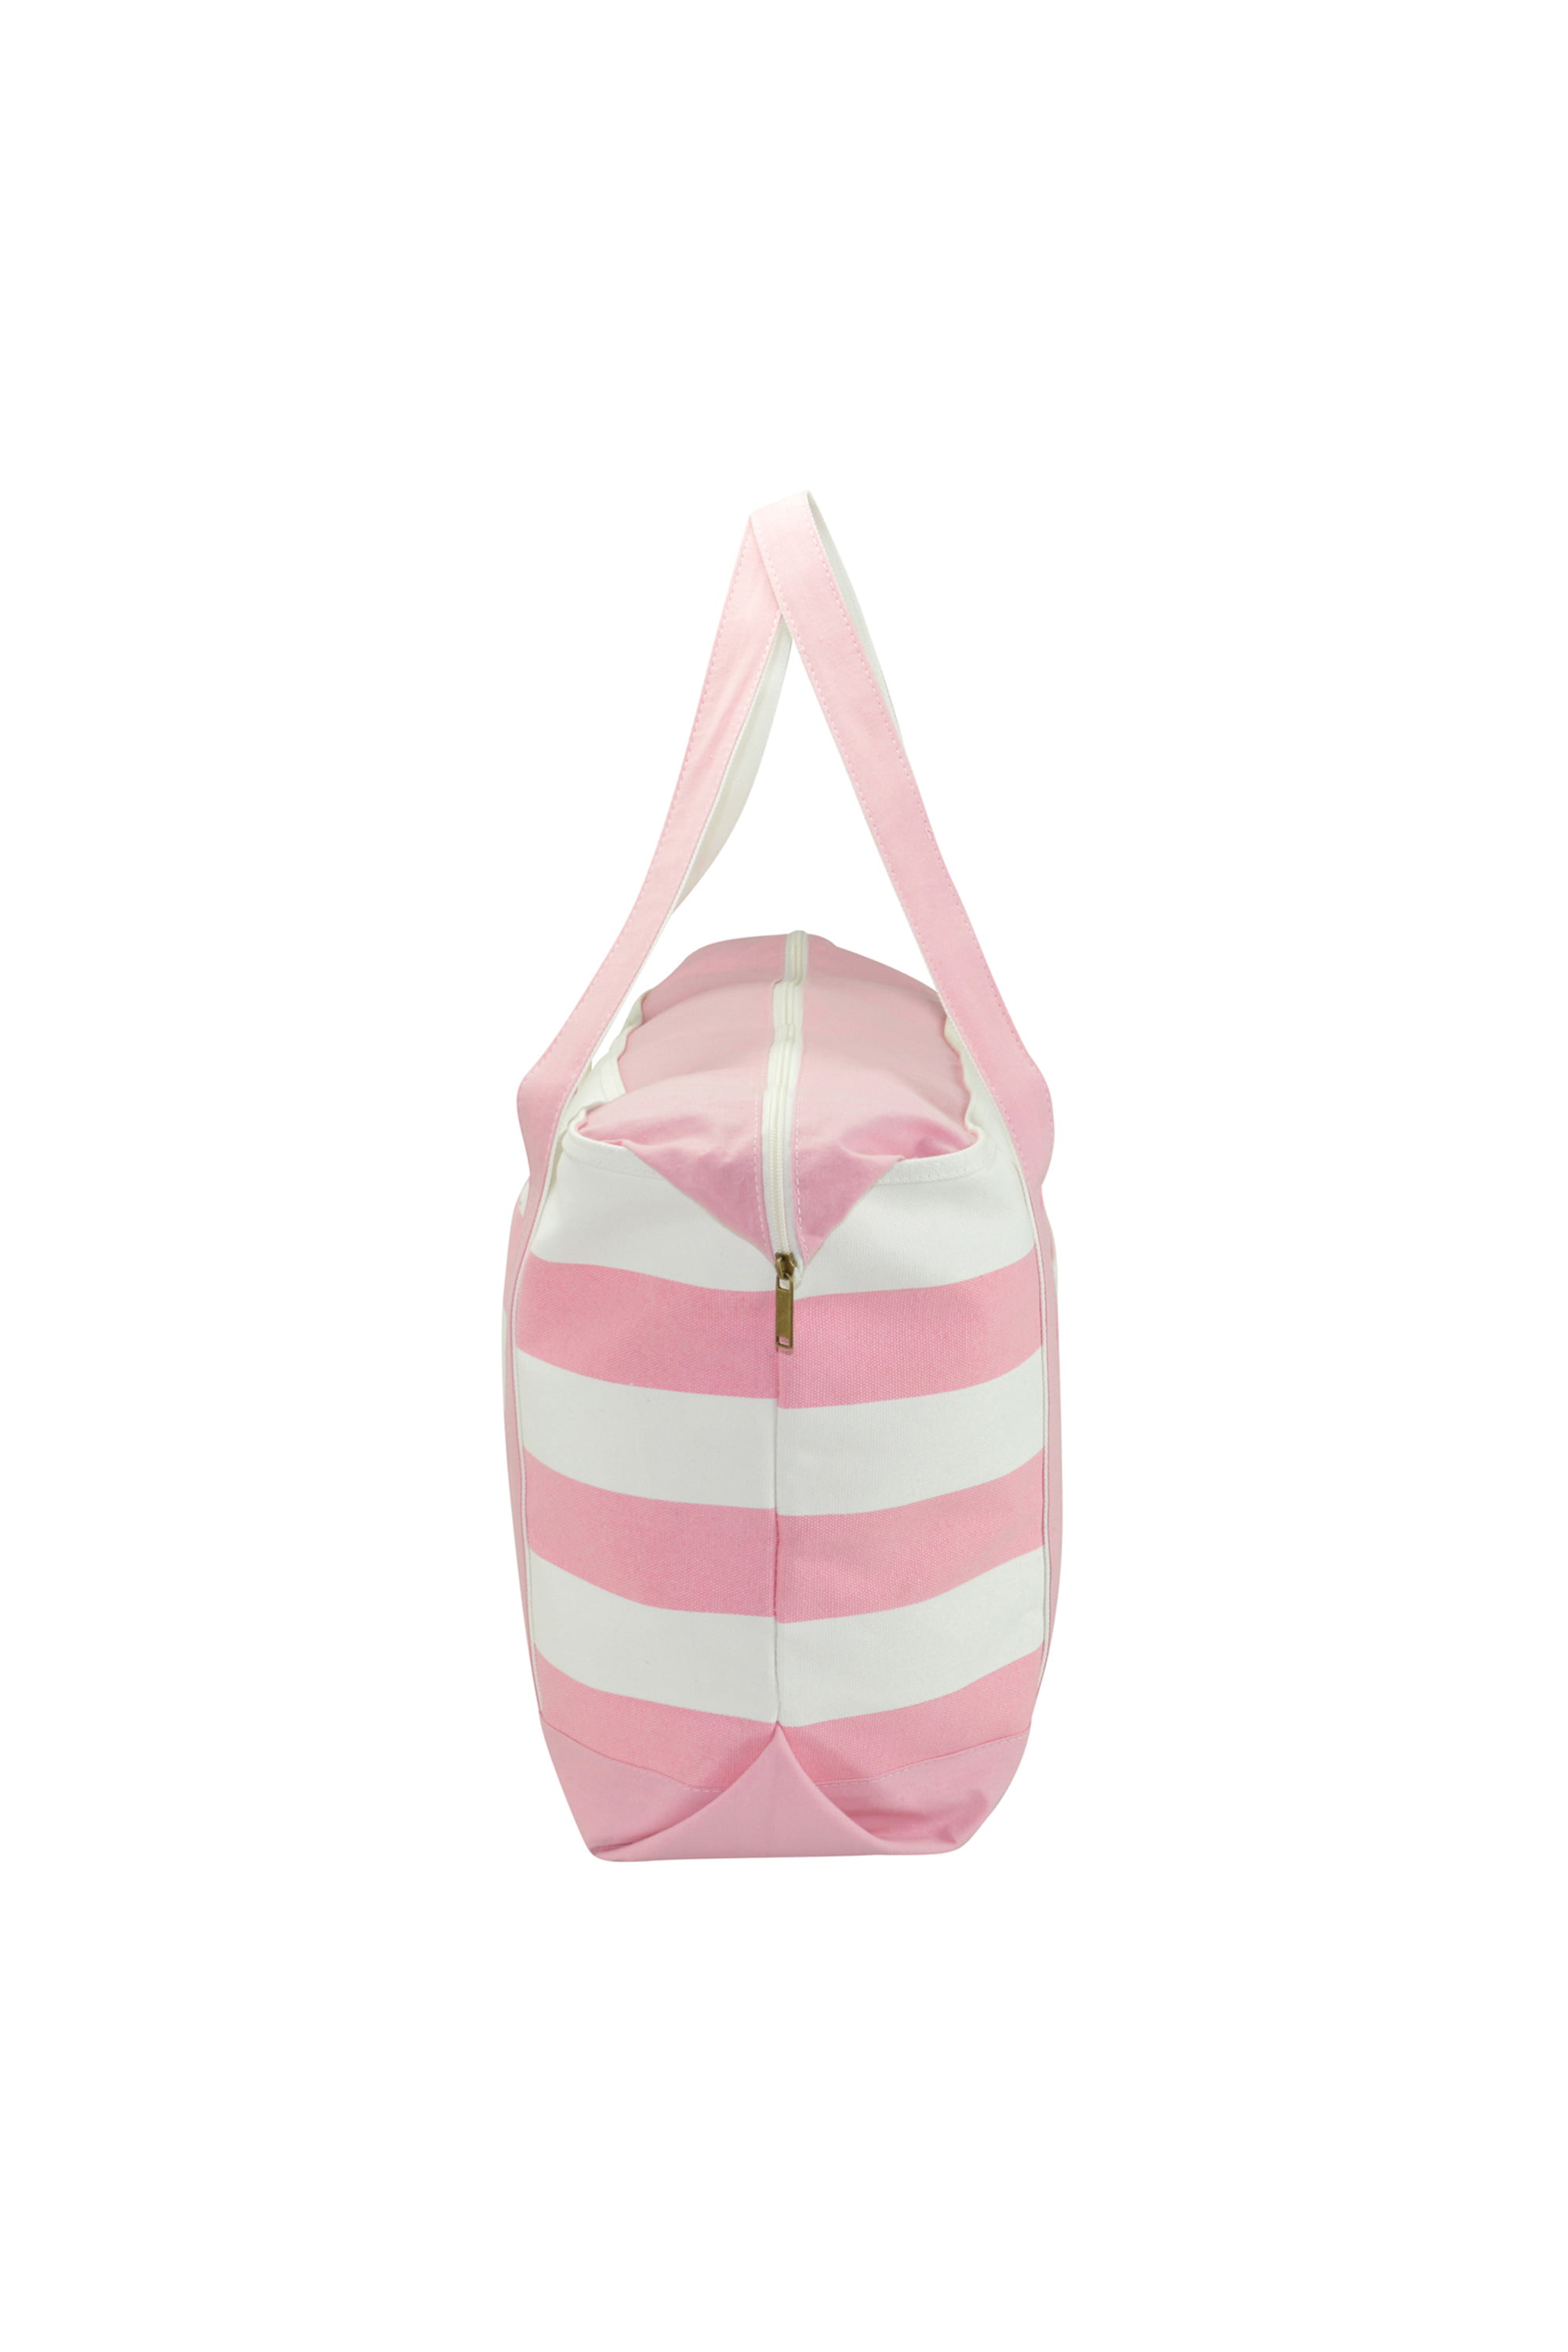 DALIX Striped Boat Bag Premium Cotton Canvas Tote in Pink 